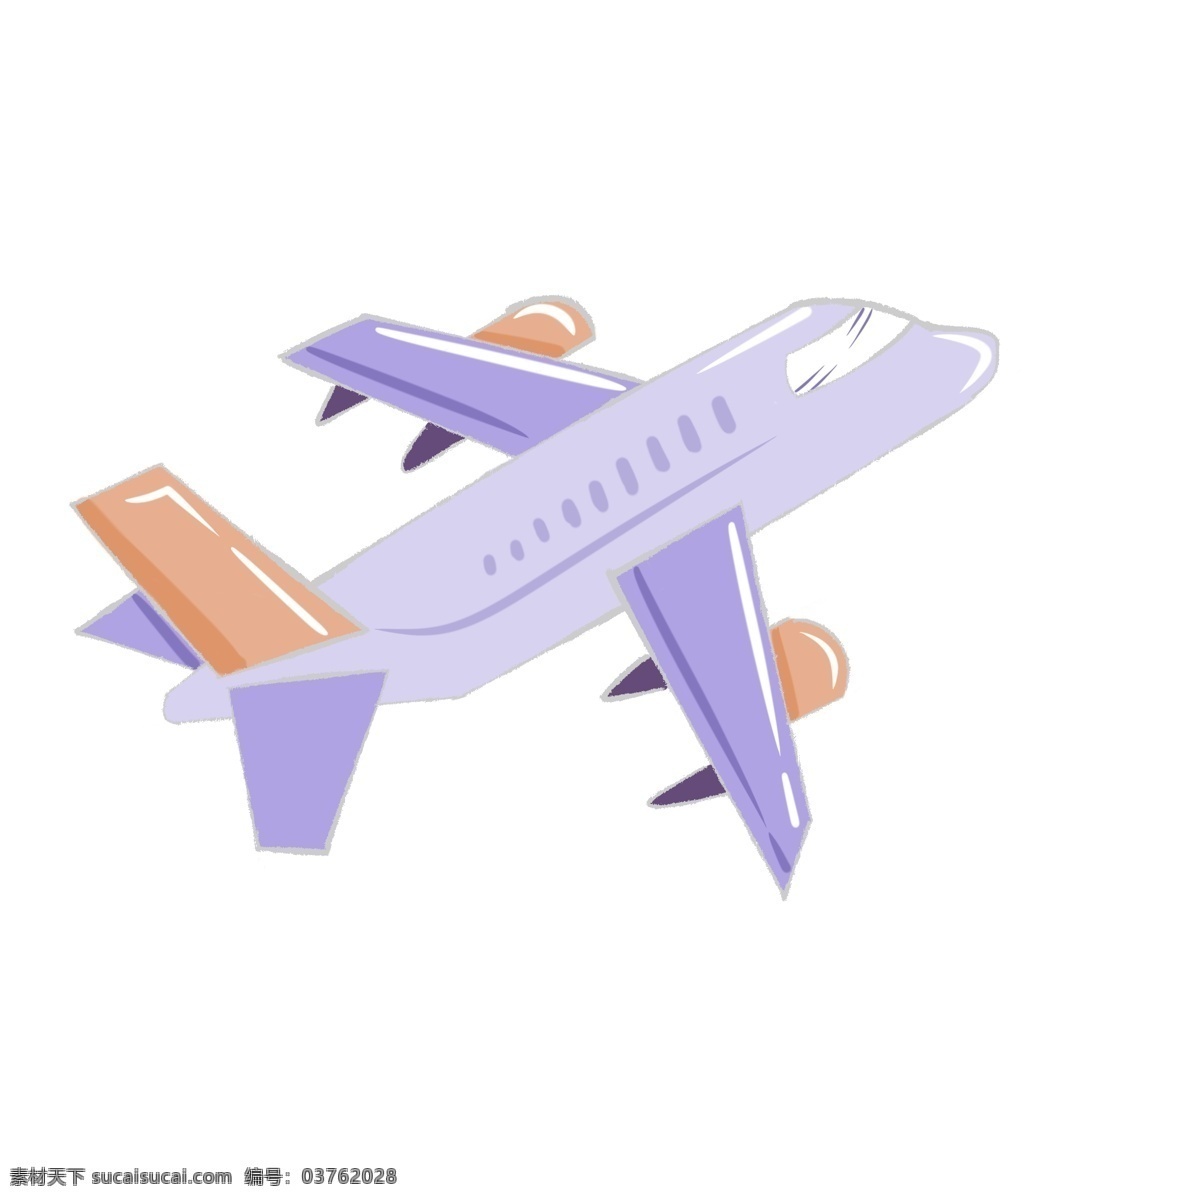 漂亮 紫色 飞机 插画 客机 飞机模型 漂亮的飞机 紫色飞机 飞机插图 飞行 飞机平面图 天空